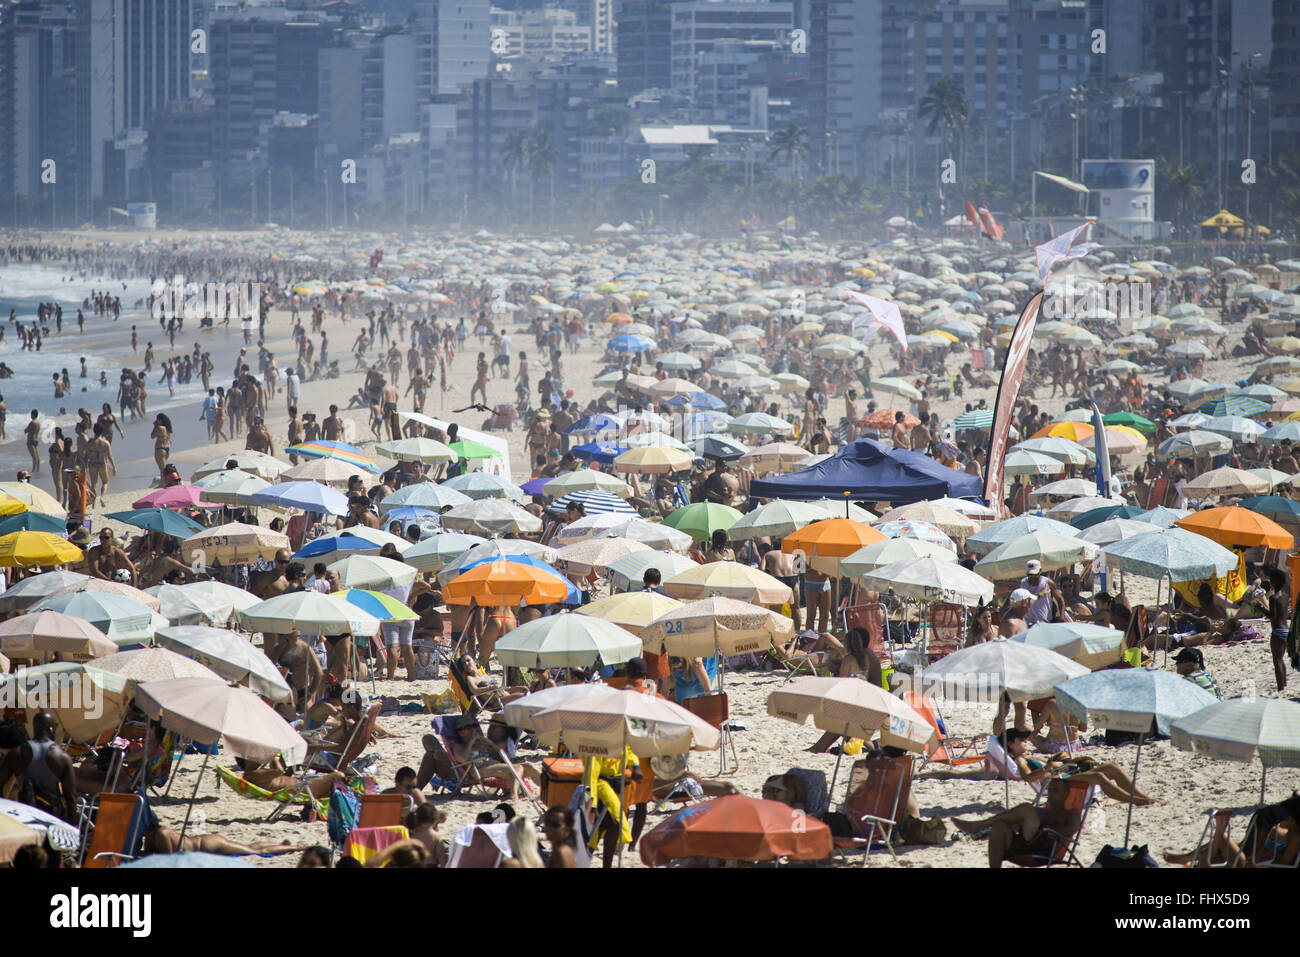 Affollata spiaggia di Ipanema - sud della città Foto Stock